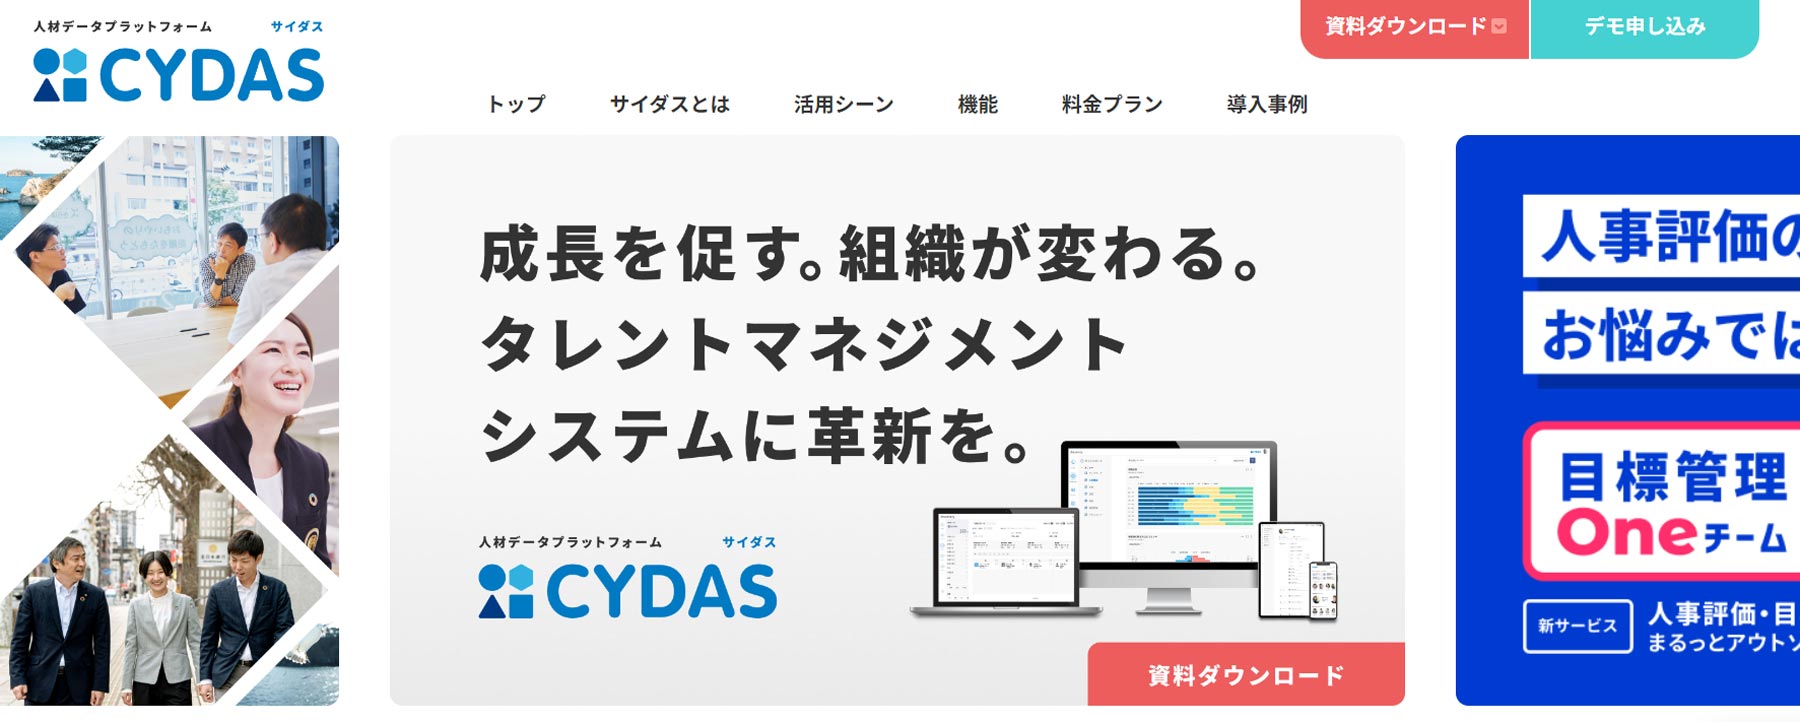 CYDAS公式Webサイト